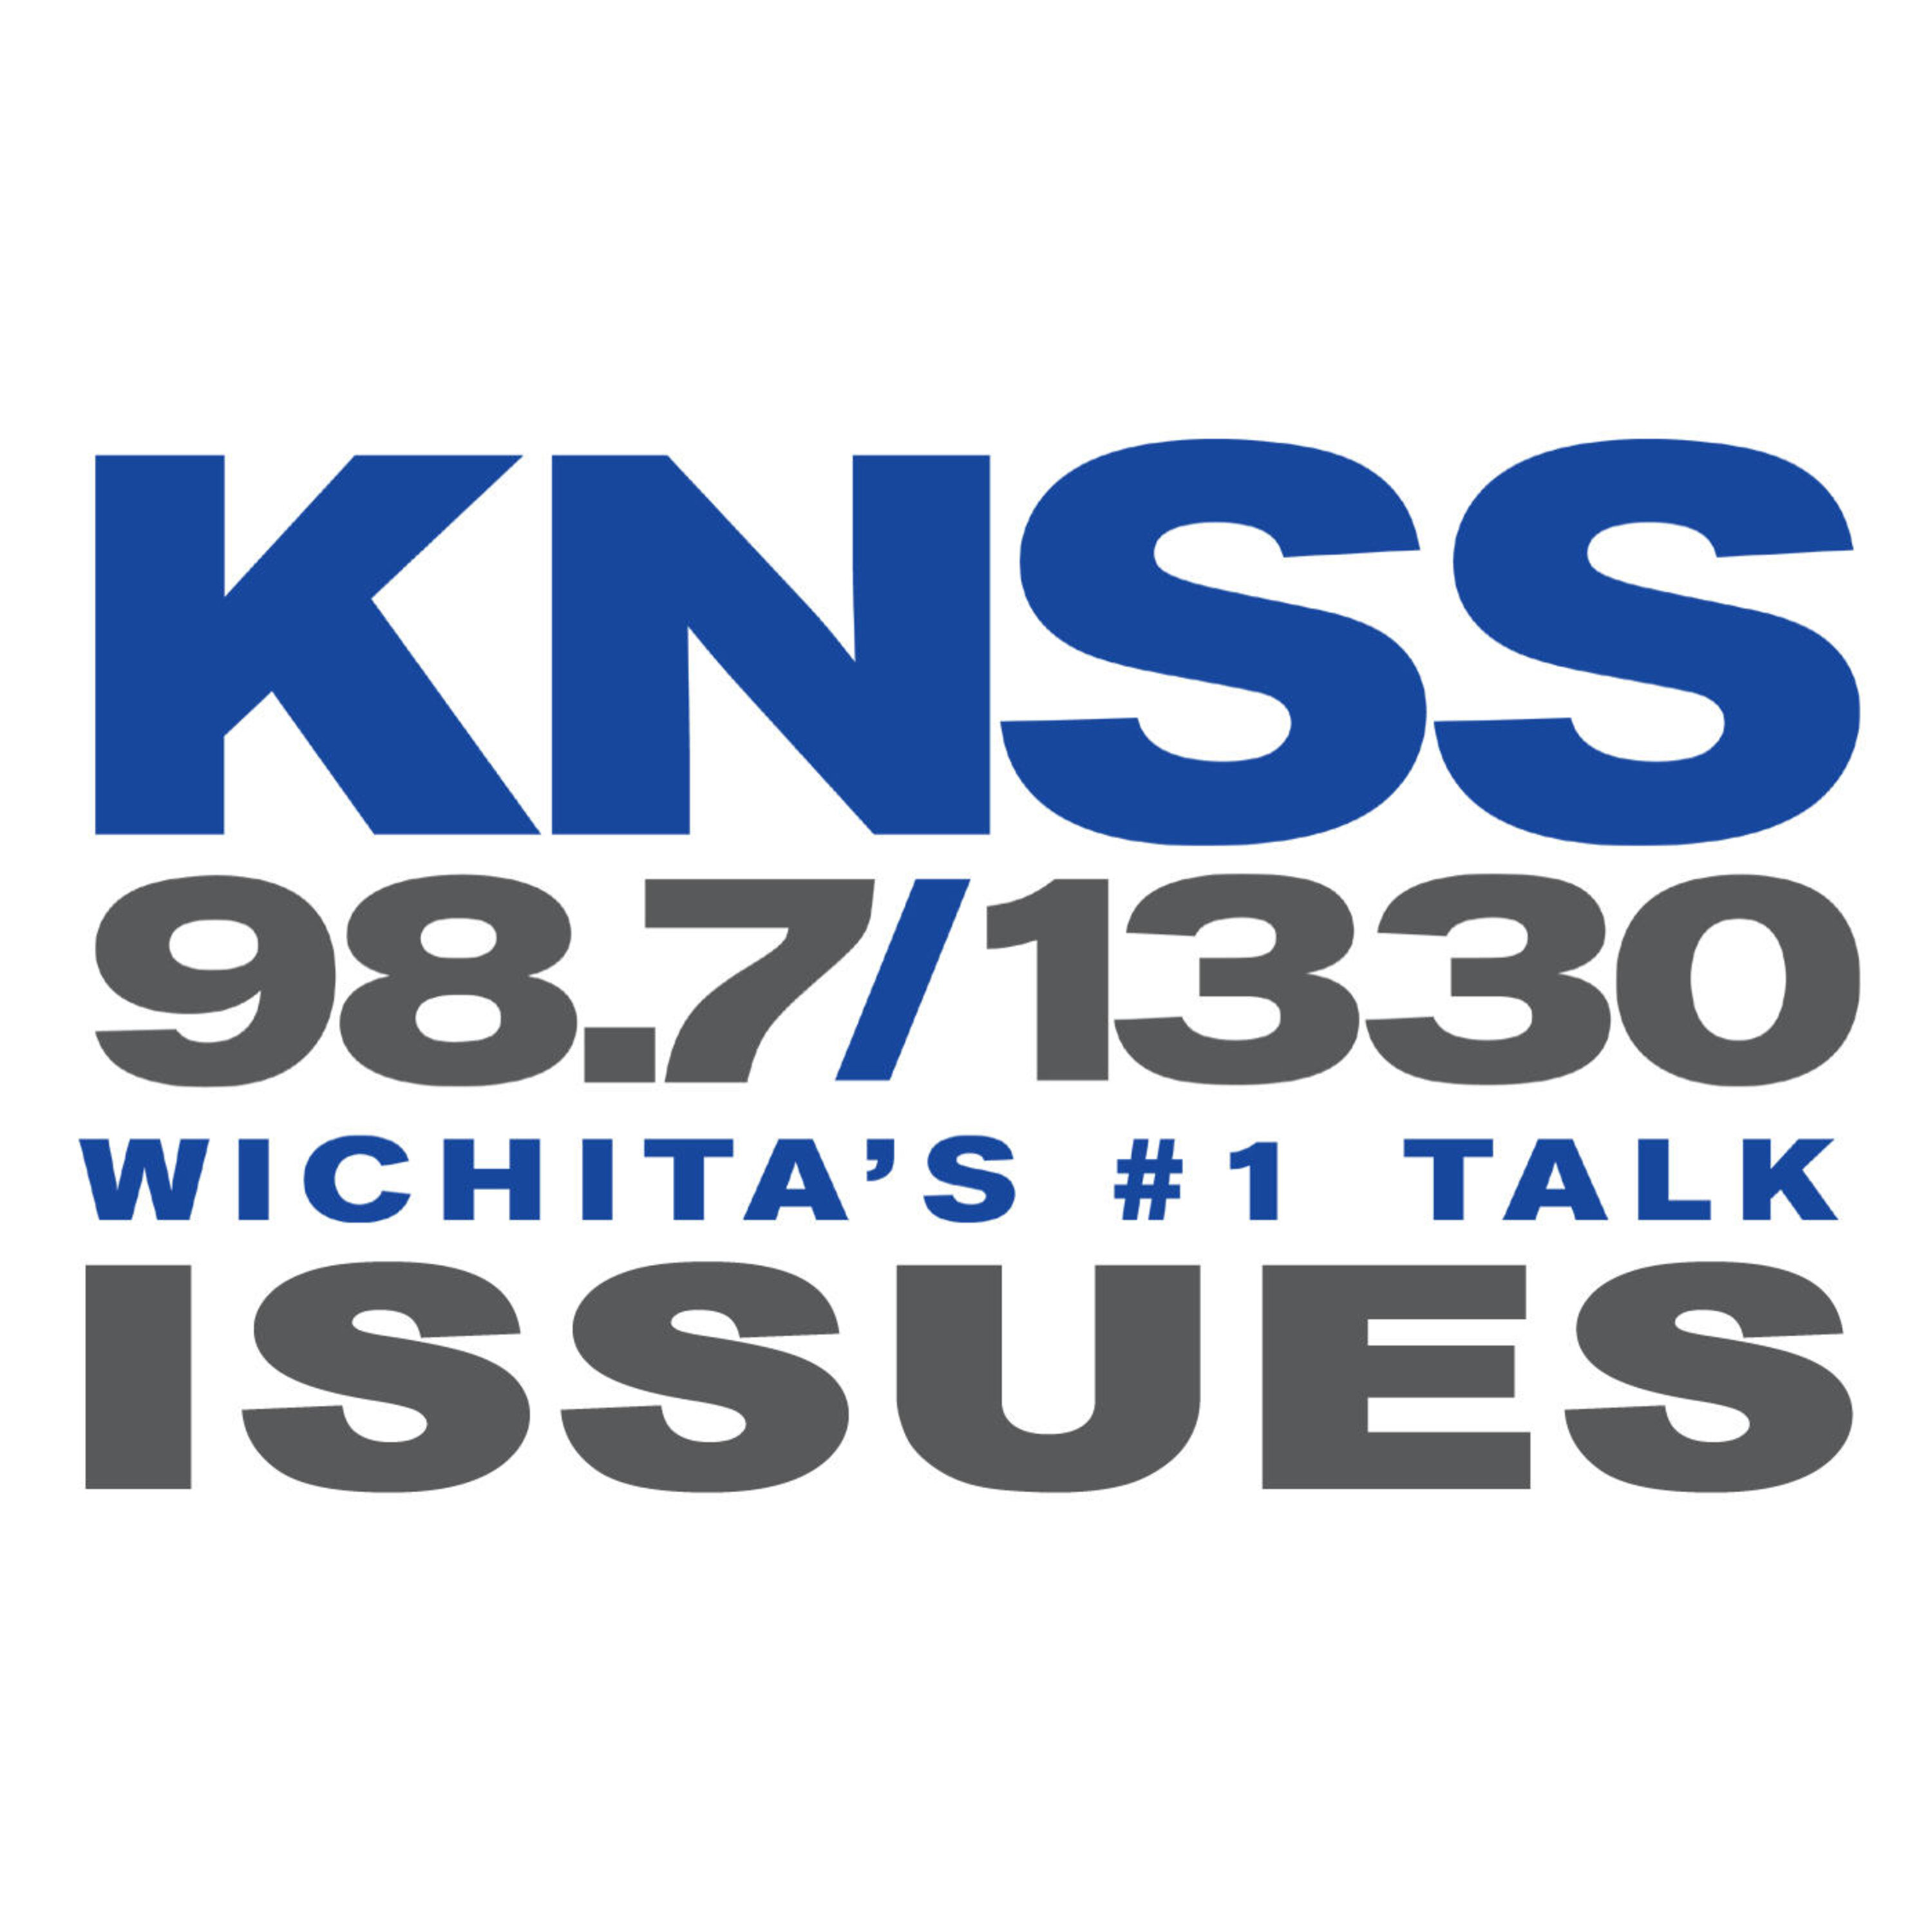 Issues 2022. Issues. Podcast program. Keuruwmdhfnxncxjnaiwin KNSS. Usd сервис